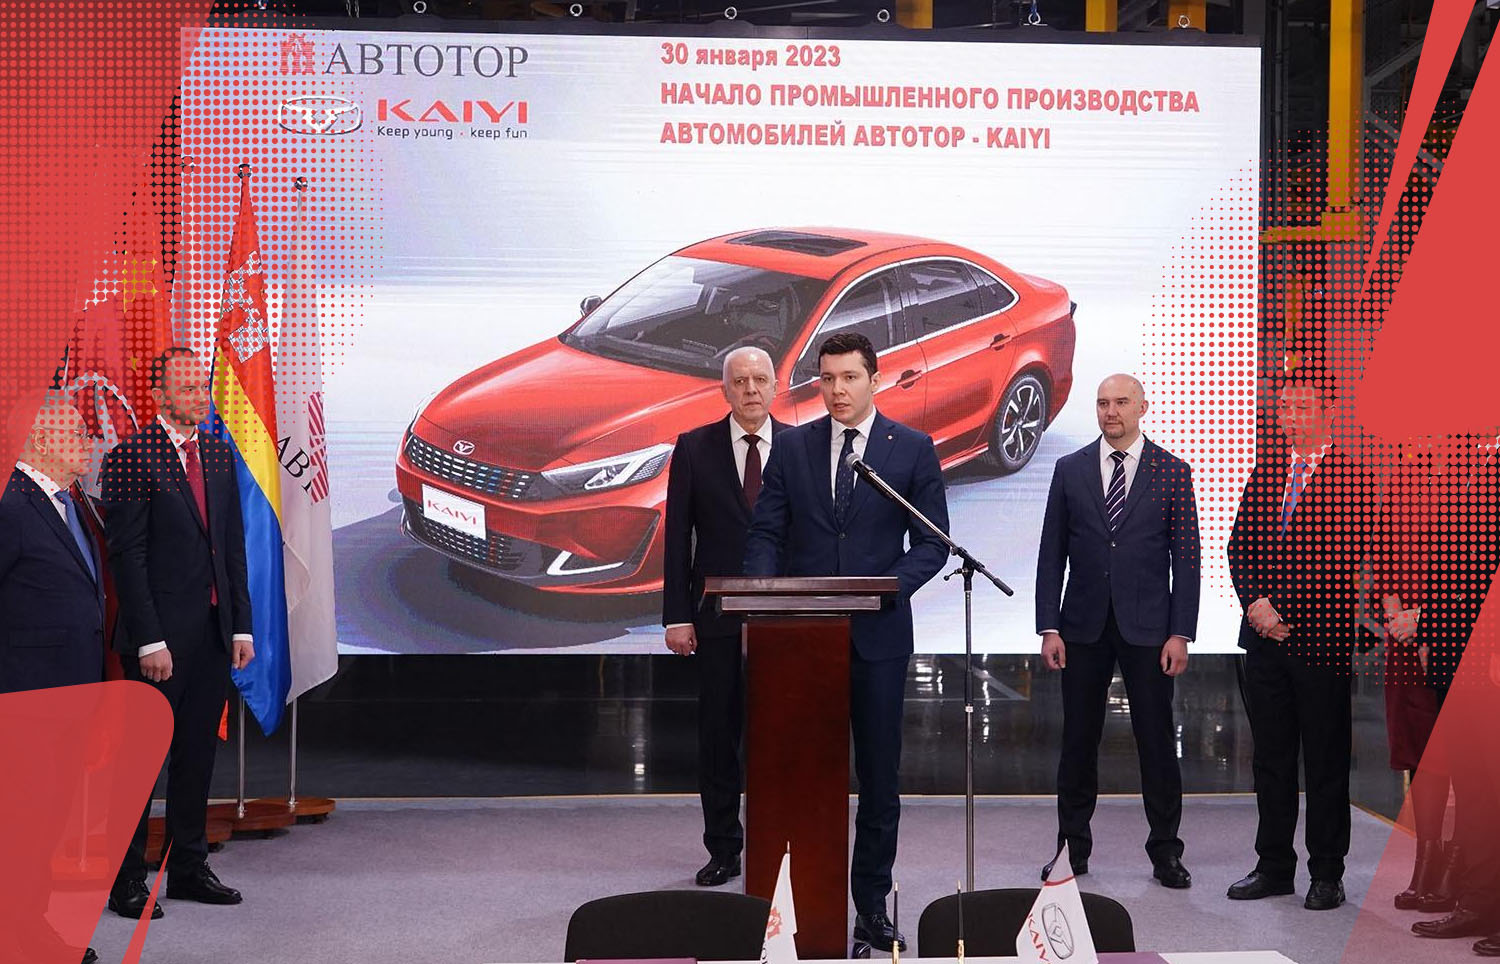 АВТОТОР начал производство автомобилей Kaiyi в 2023 году